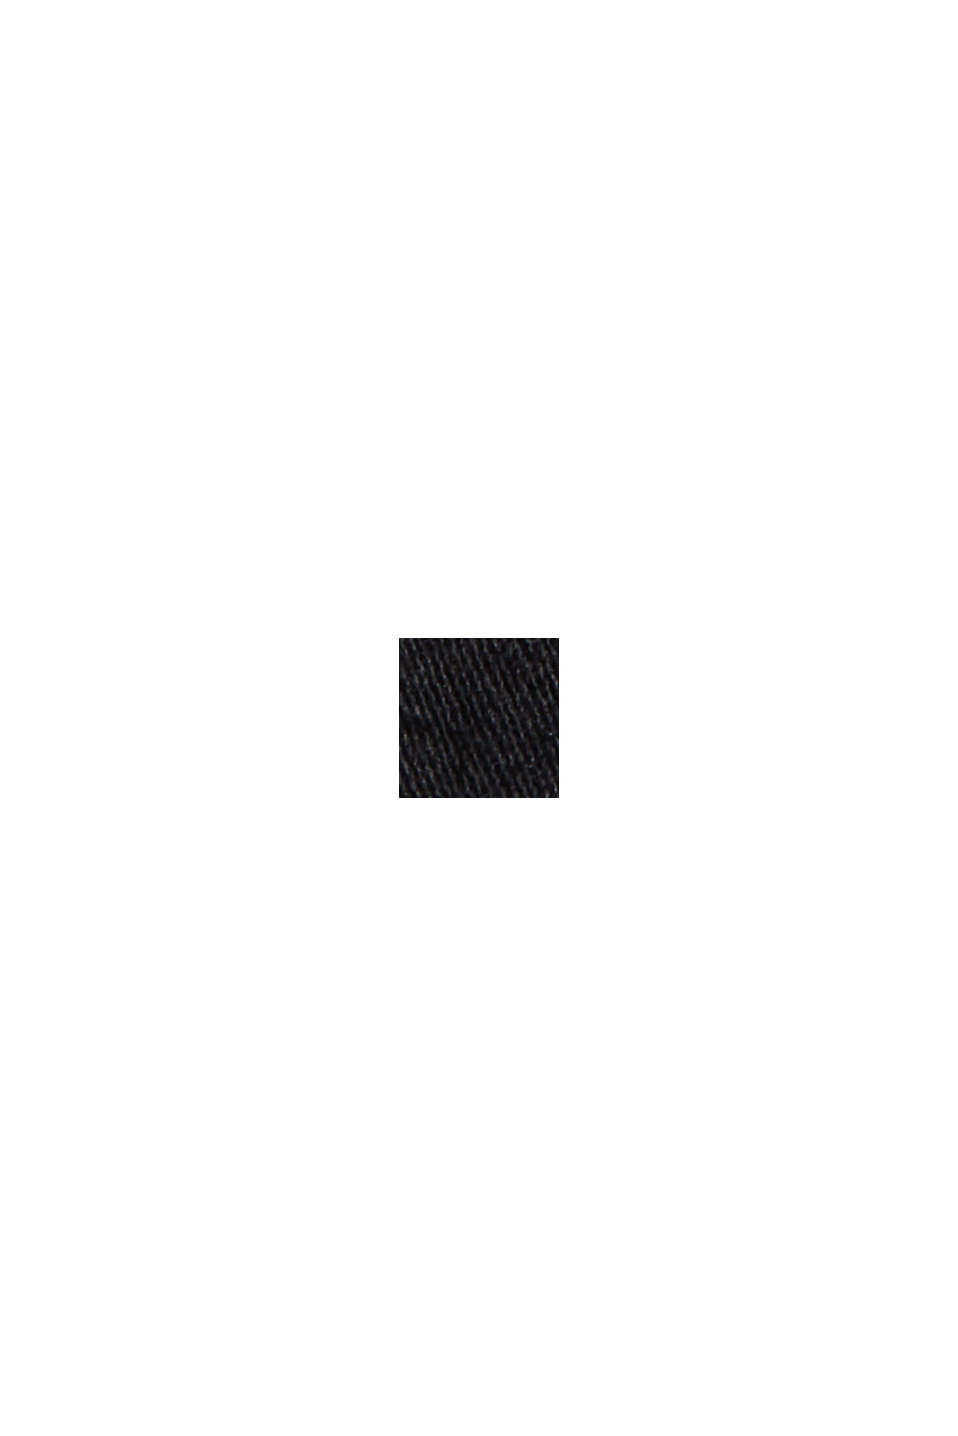 Džíny s knoflíkovou lištou a kašmírovým povrchem, BLACK RINSE, swatch